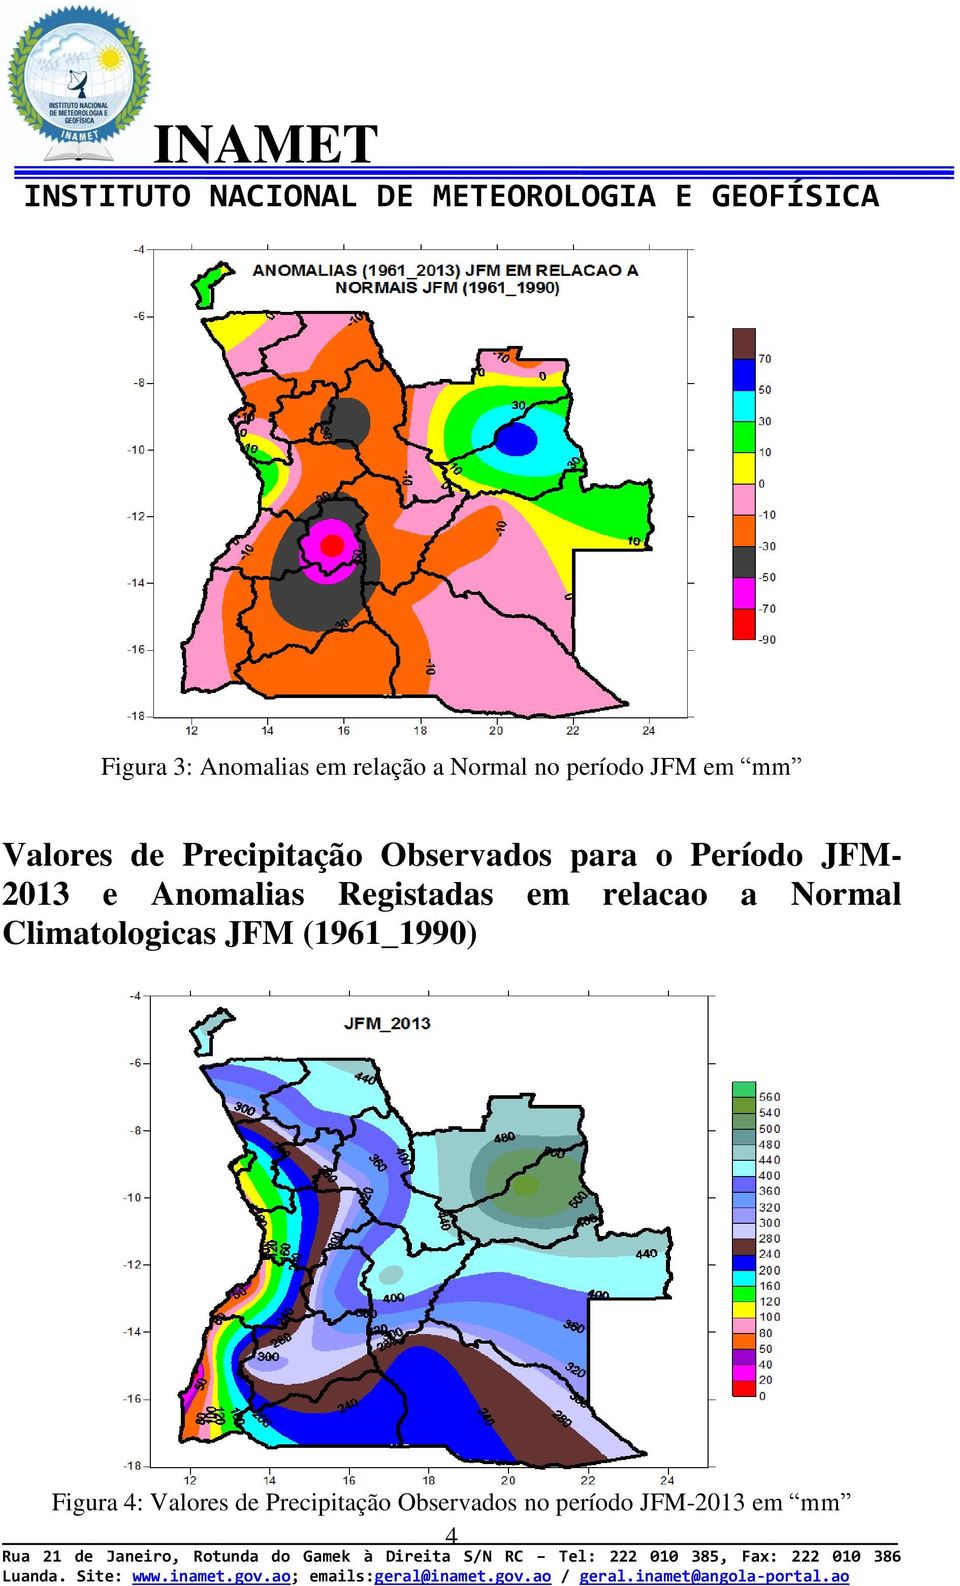 Anomalias Registadas em relacao a Normal Climatologicas JFM